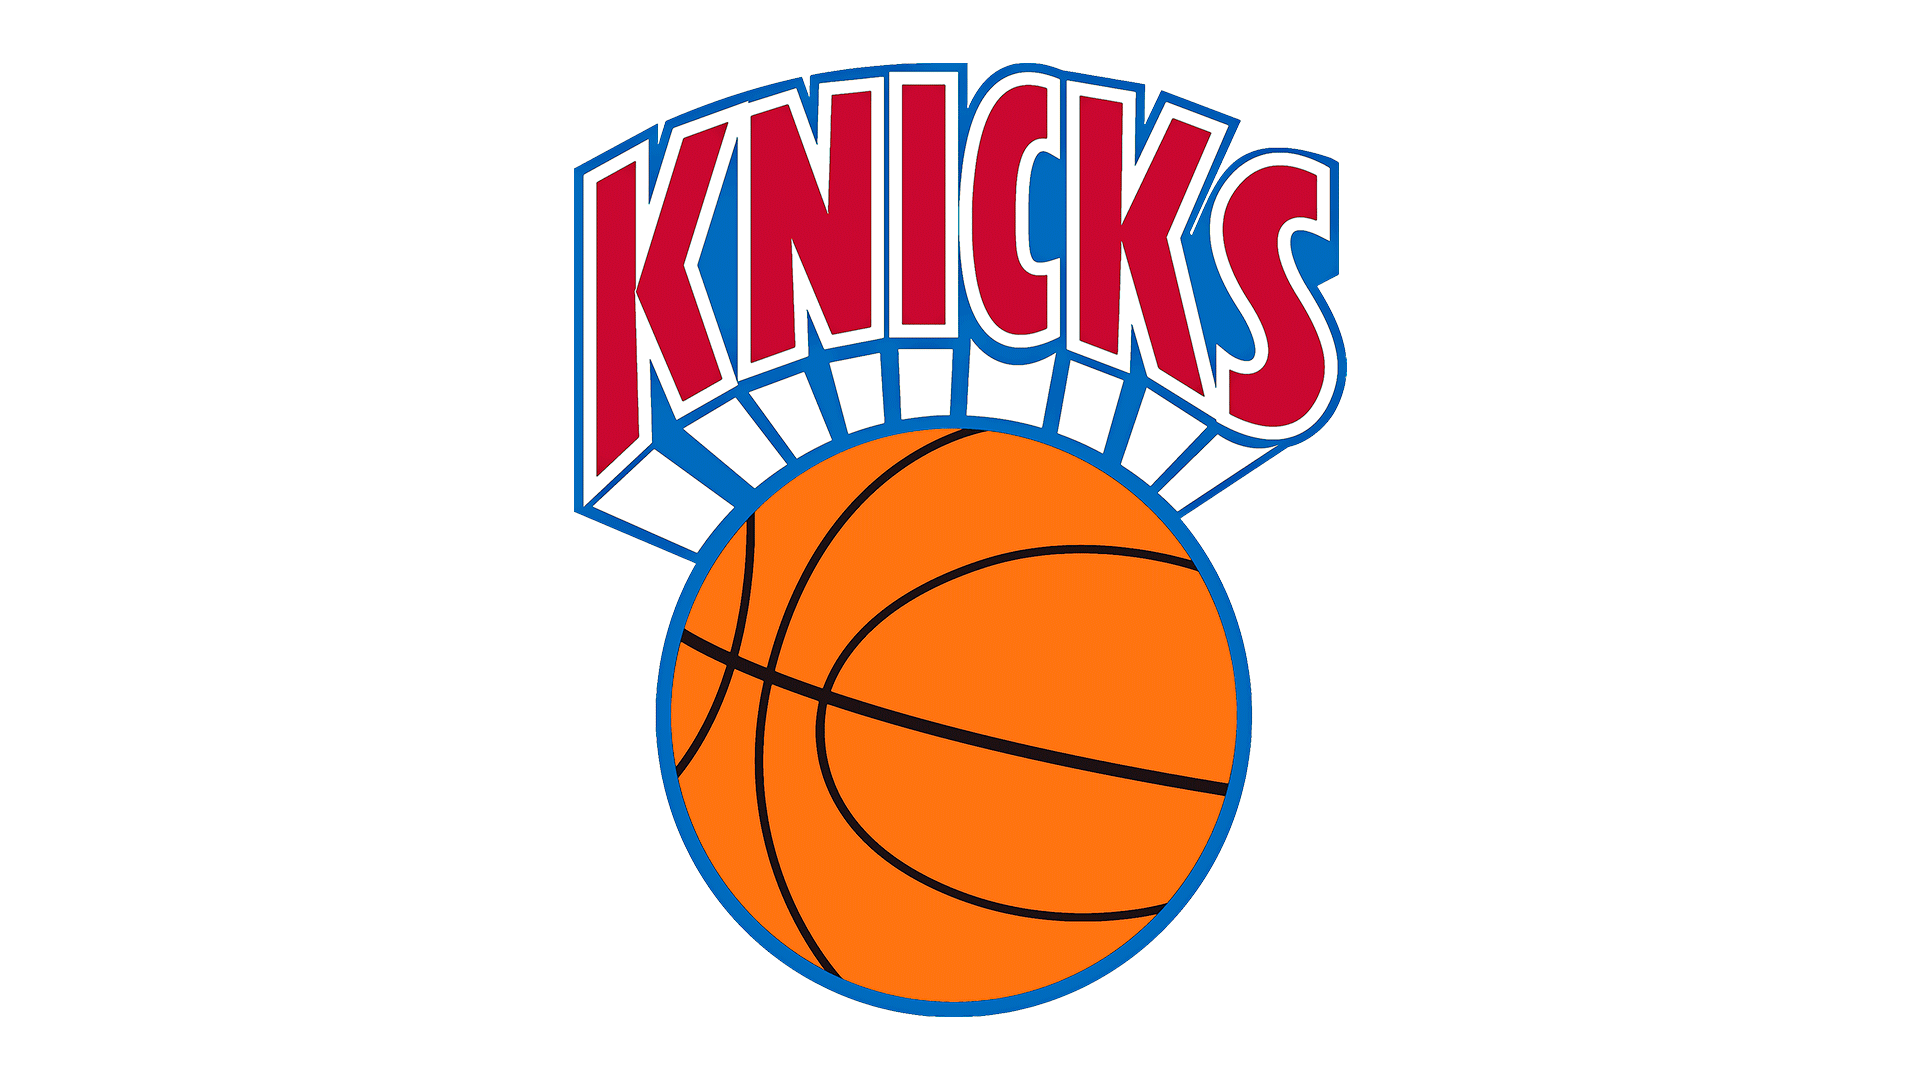 New York Knicks Logo : histoire, signification de l'emblème